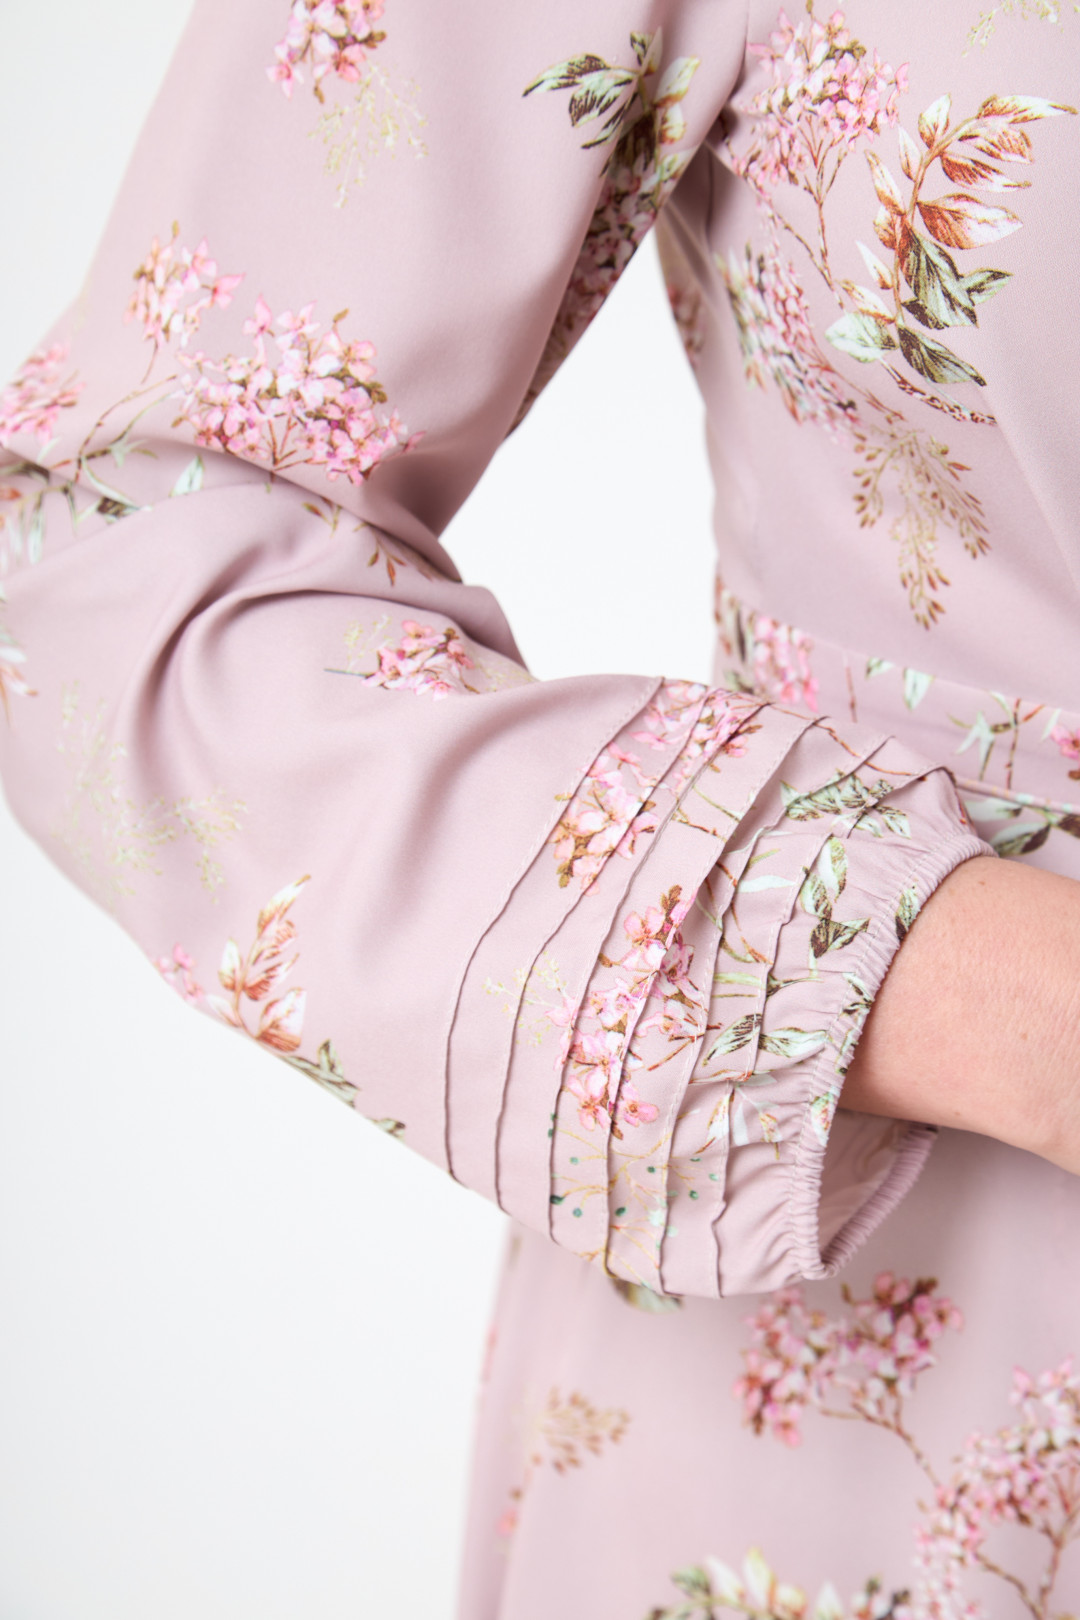 Платье ТЭФФИ-стиль 1452 нежно-розовый